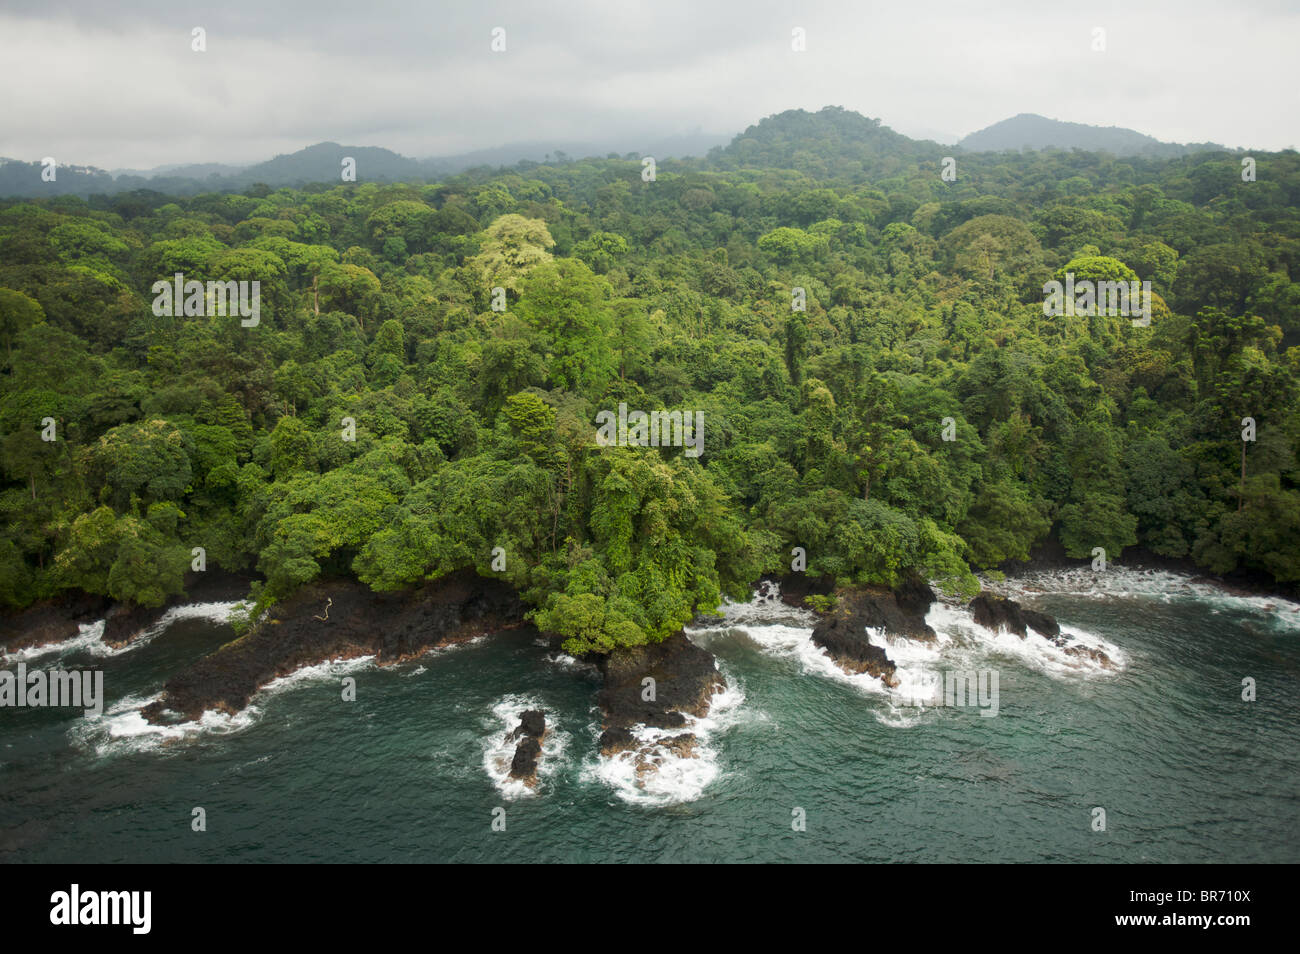 Vue aérienne de la forêt vierge sur la côte sud de l'île de Bioko, la Guinée équatoriale, l'Afrique centrale. Janvier 2008 Banque D'Images